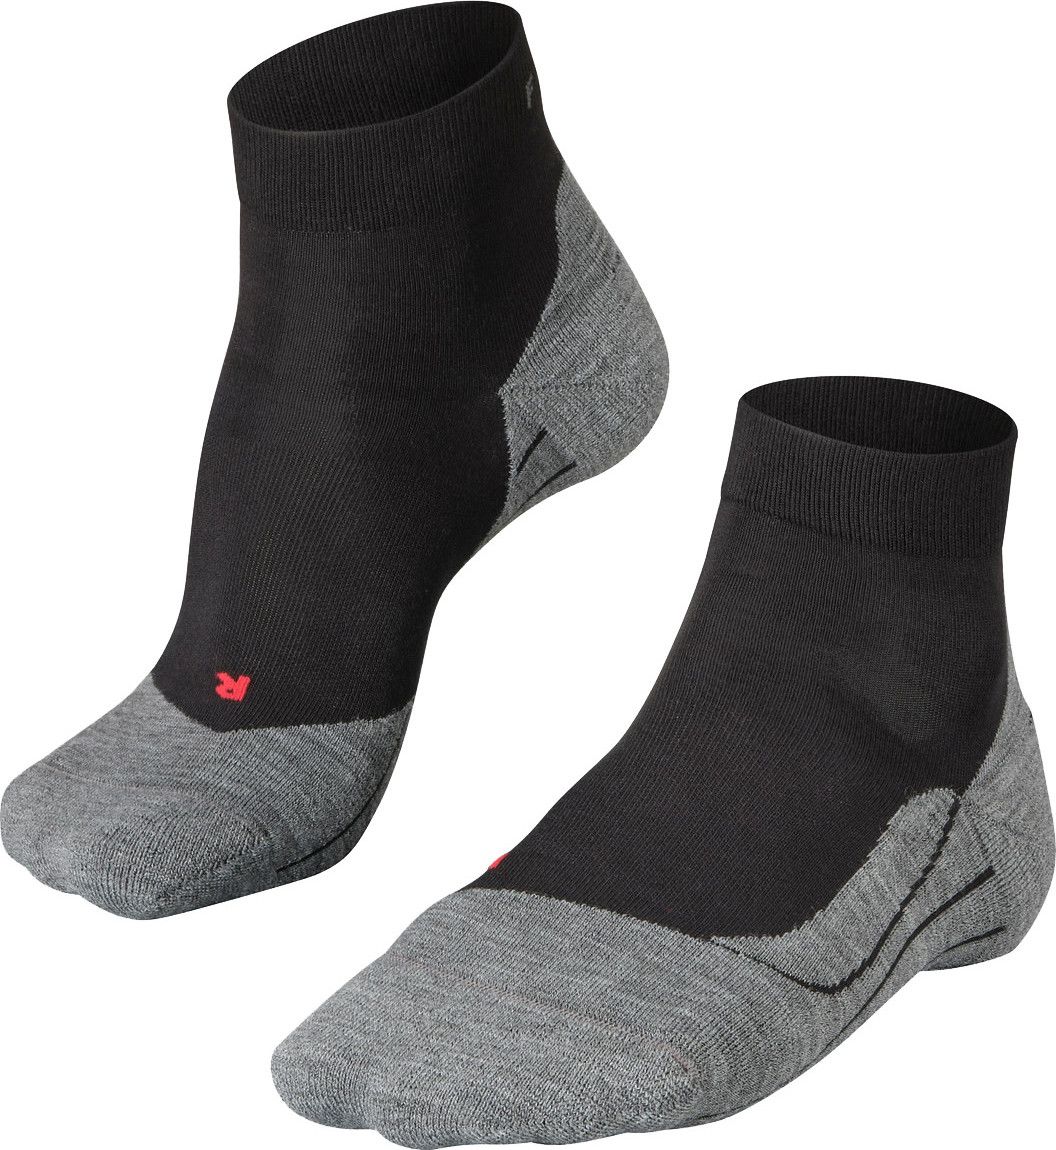 Falke Men's RU4 Short Running Socks Black-mix